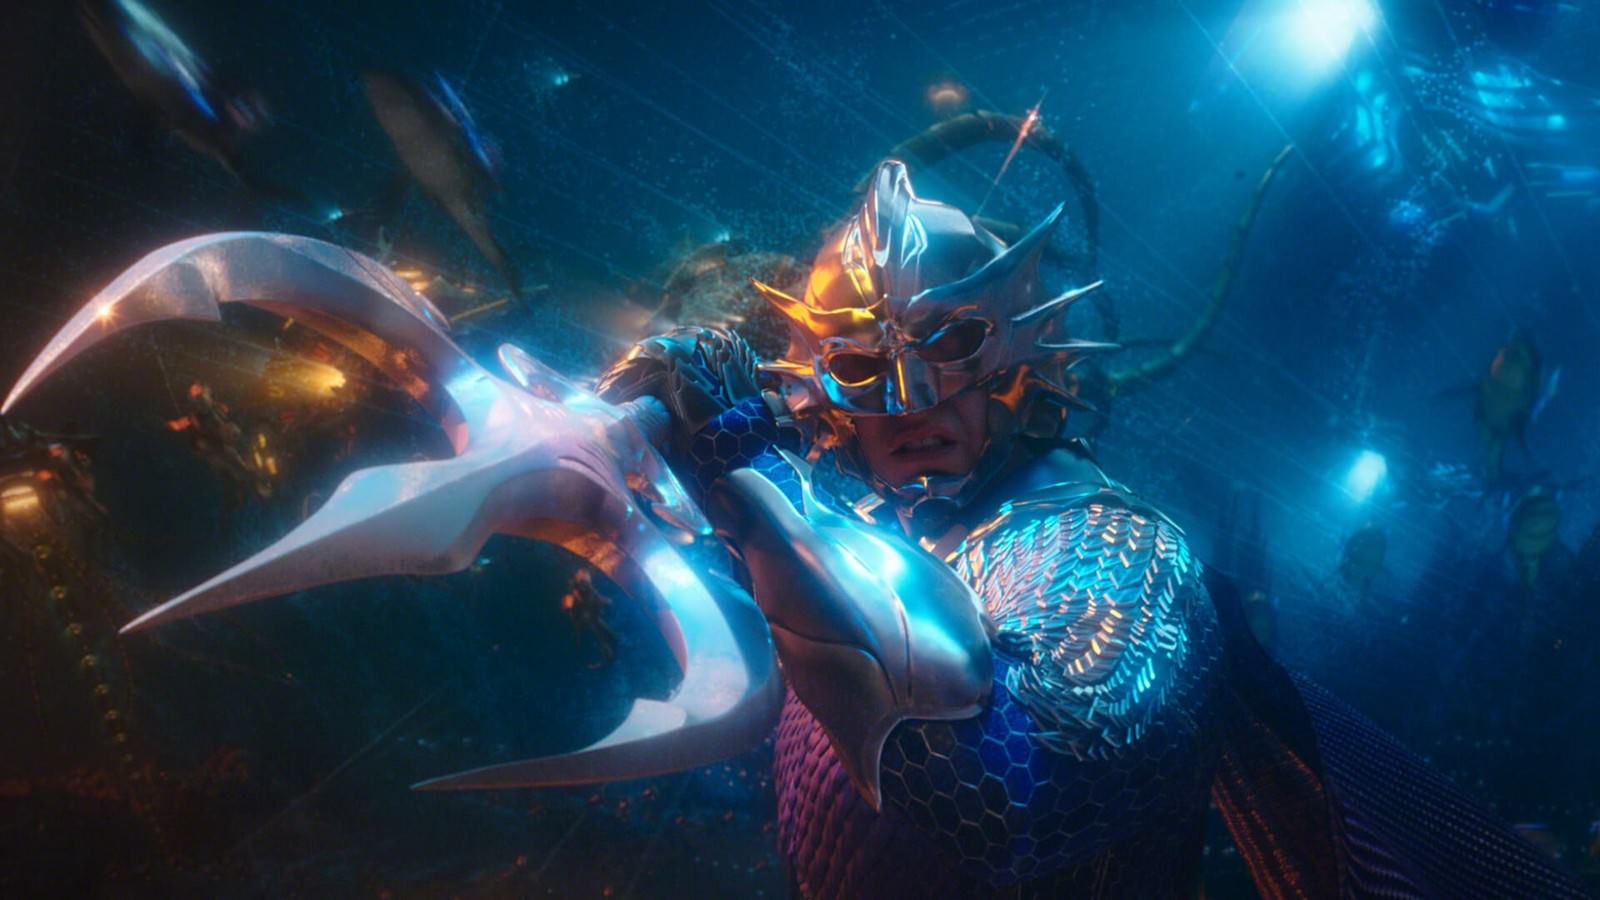 Movie, Aquaman(美國, 2018年) / 水行俠(台灣.香港) / 海王(中國), 電影角色與演員介紹